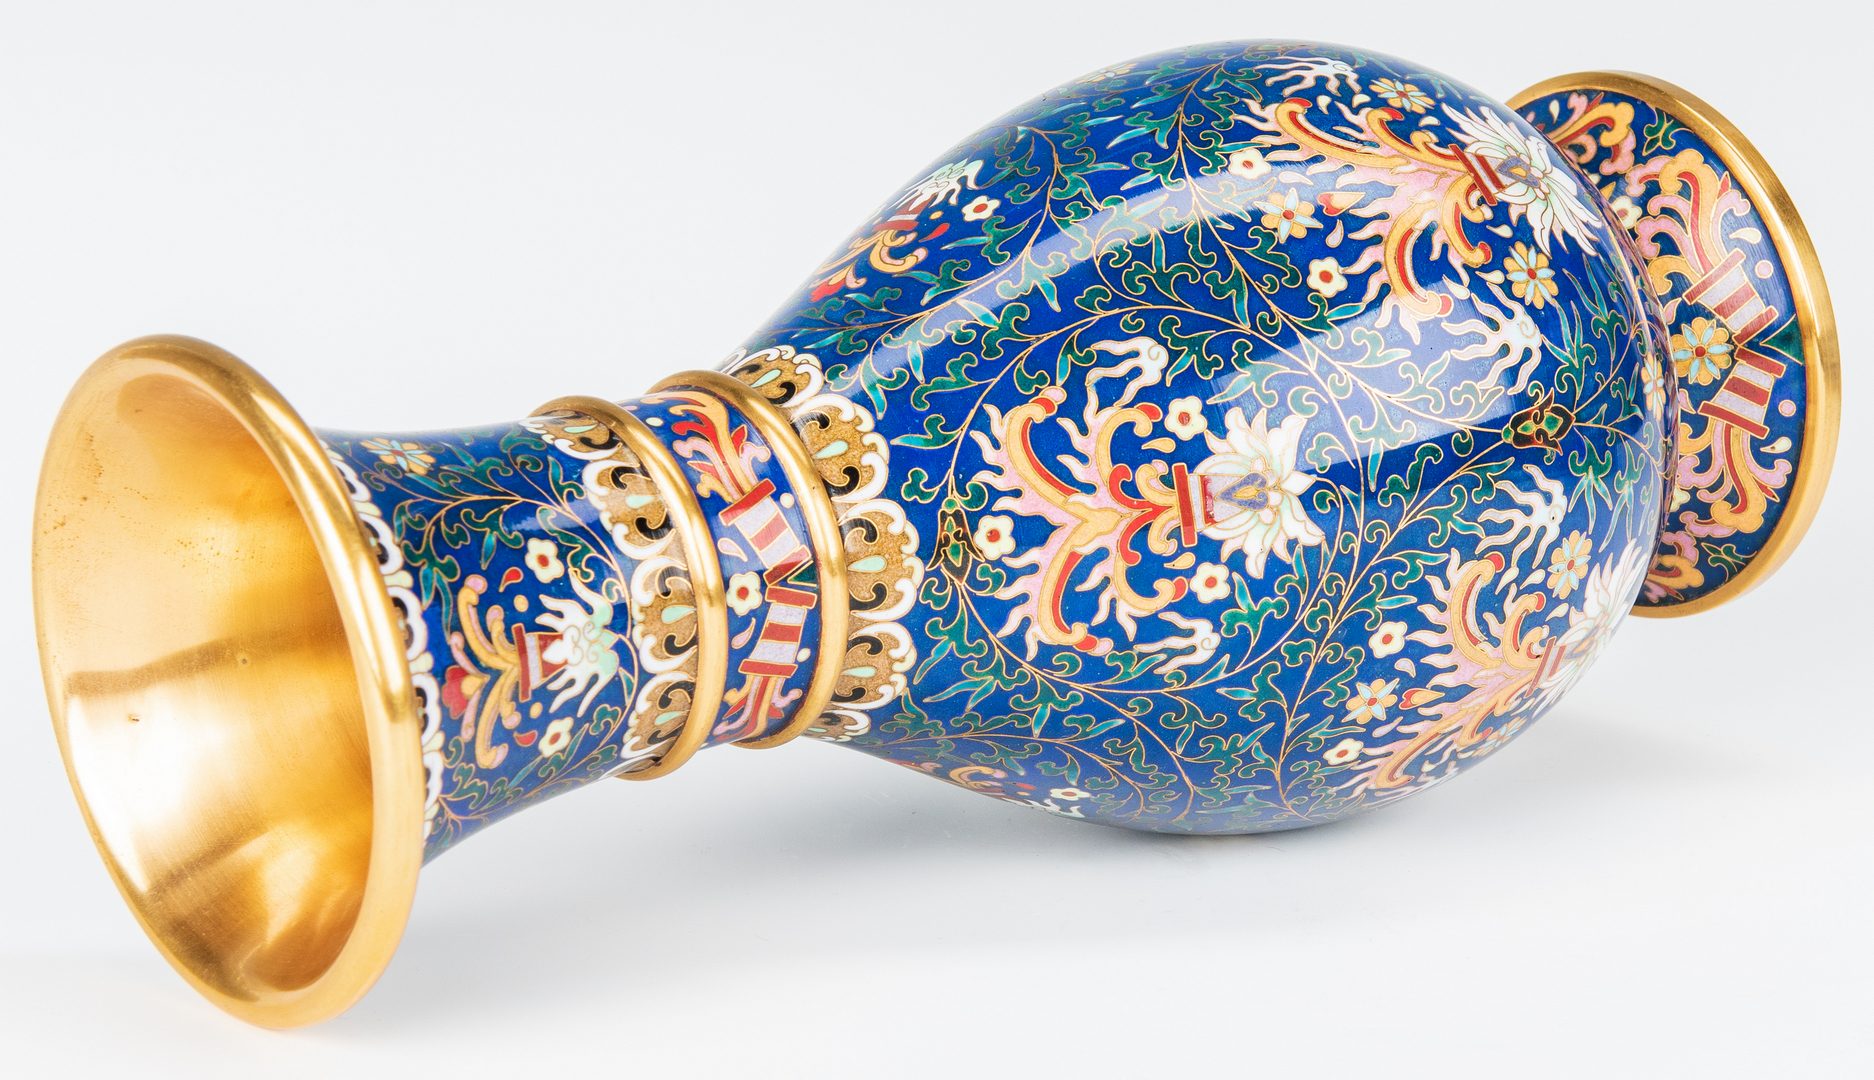 Lot 184: Pr. Chinese Blue/ White Vases & Cloisonne Vase, 3 items